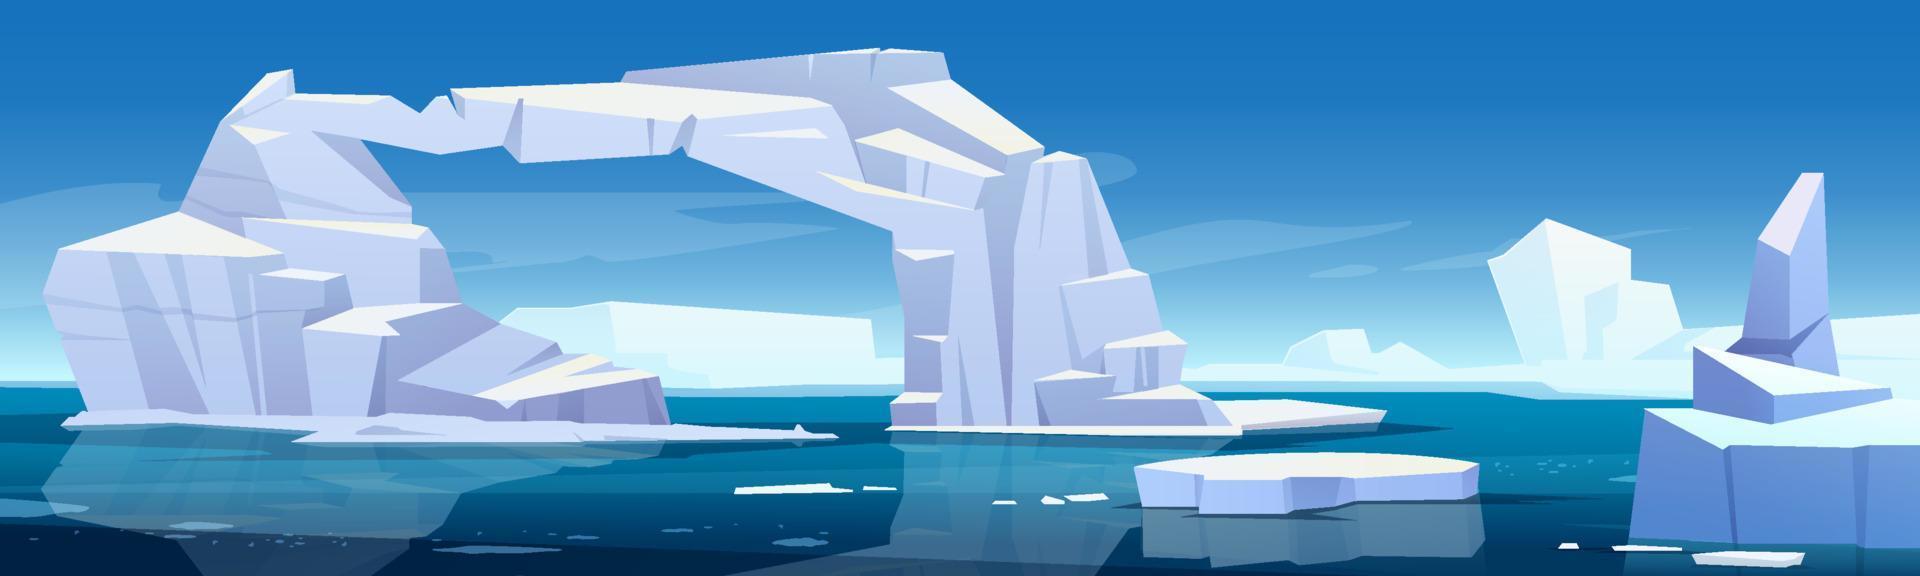 paisagem ártica com derretimento de iceberg e geleiras vetor